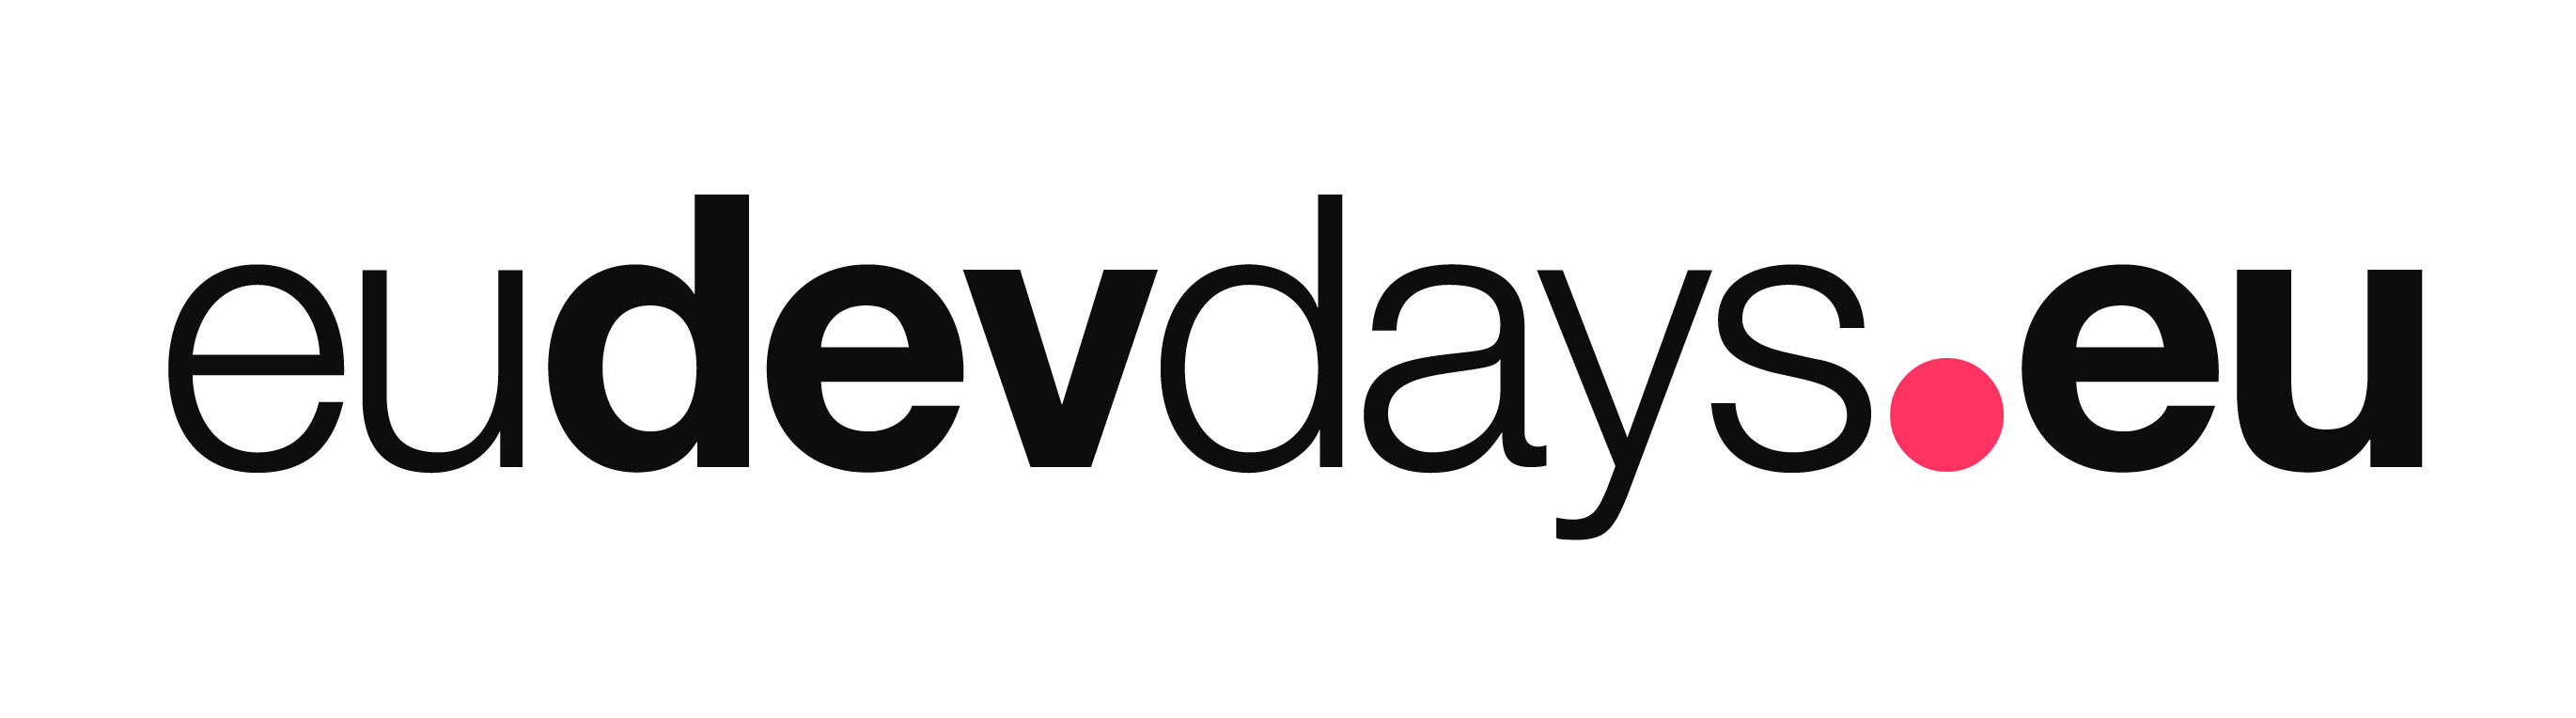 European Development Days logo